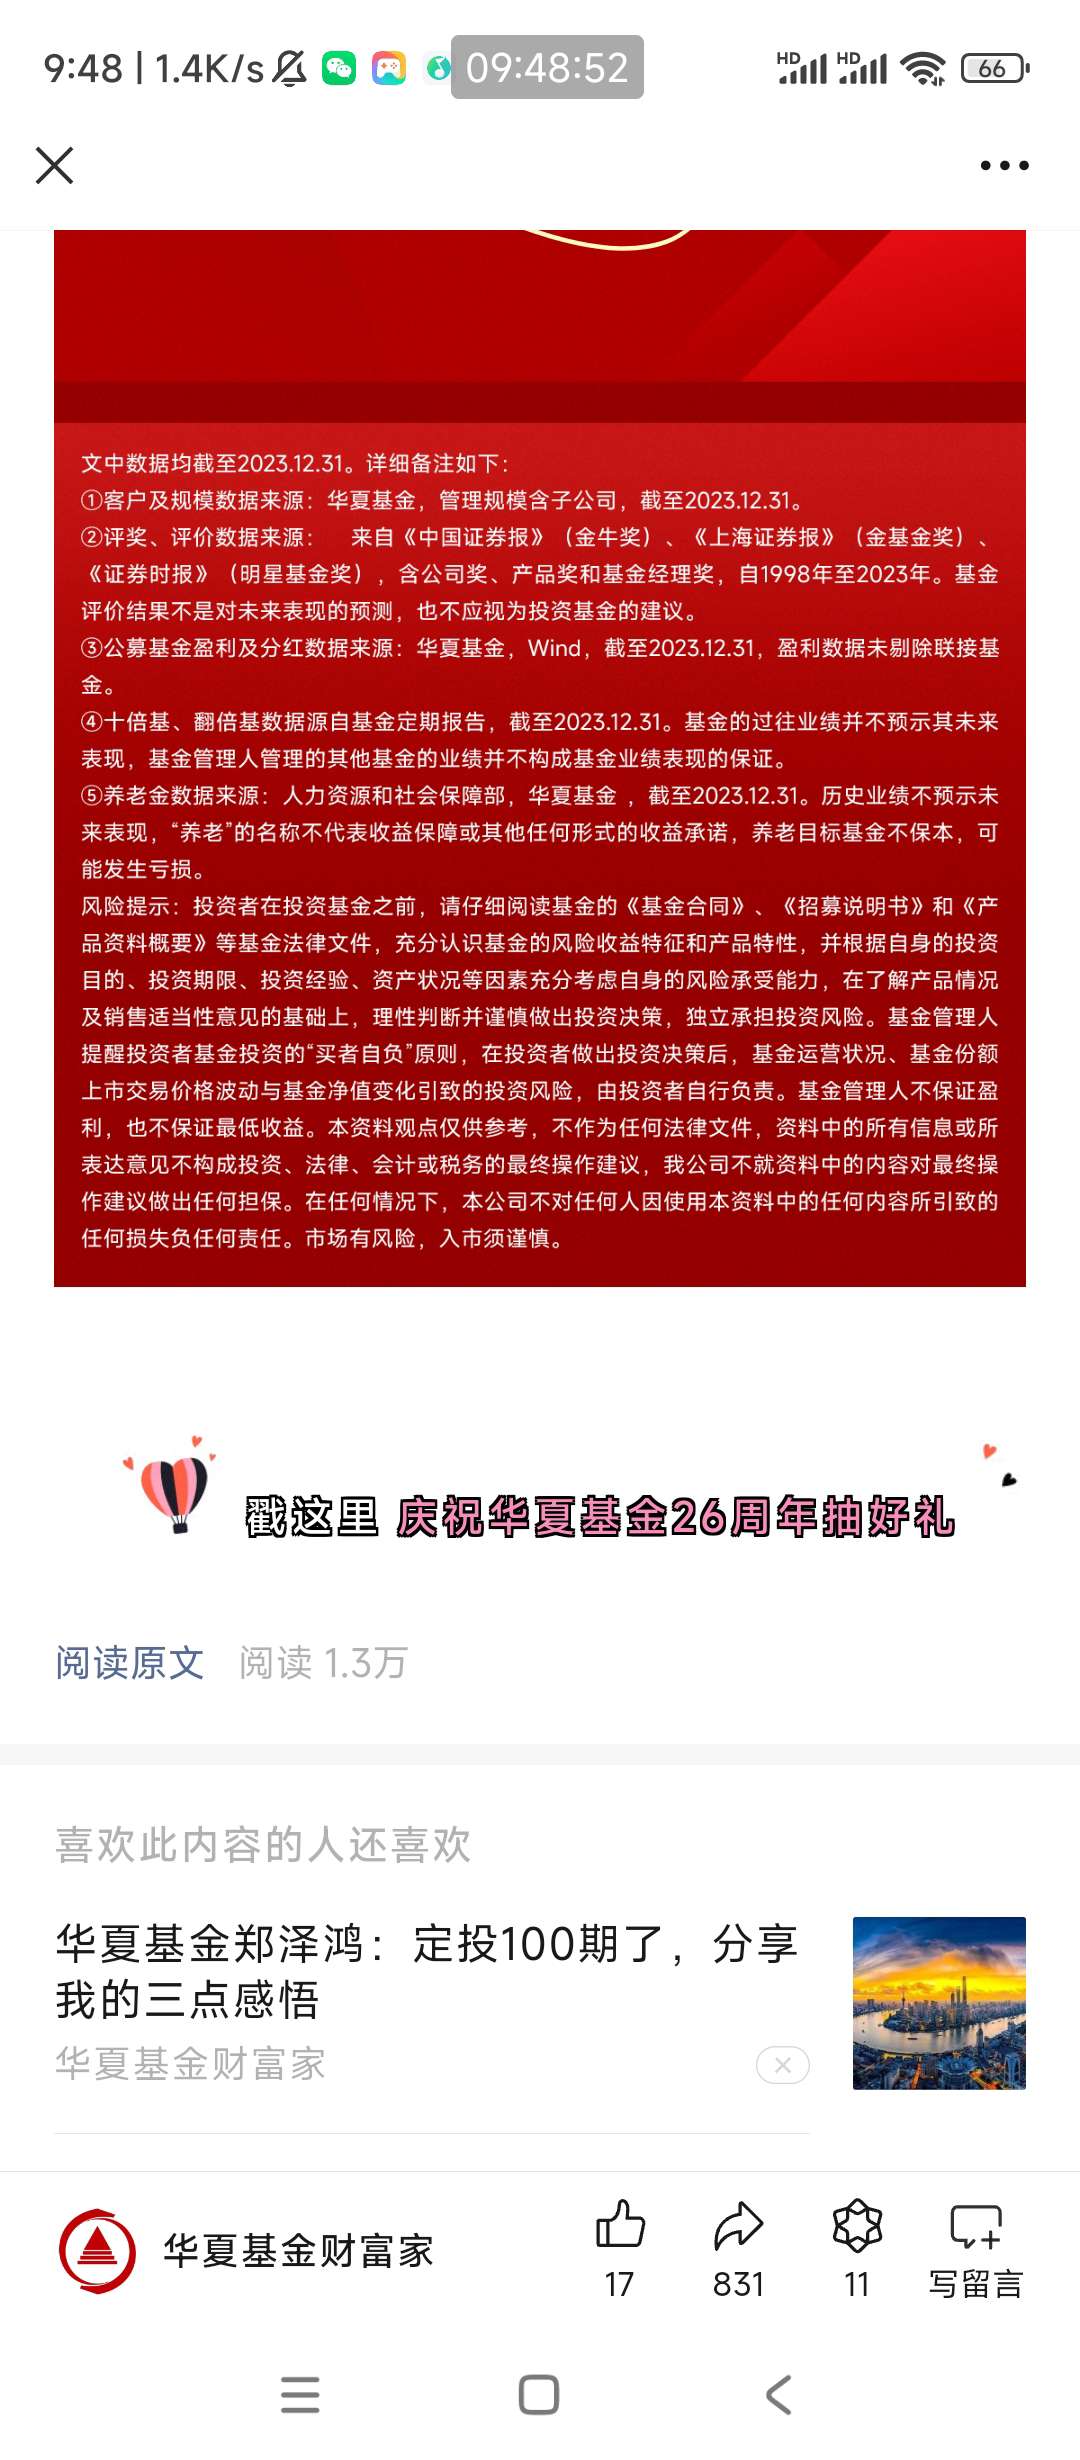 【现金红包】华夏基金26周年抽好礼_福利红包